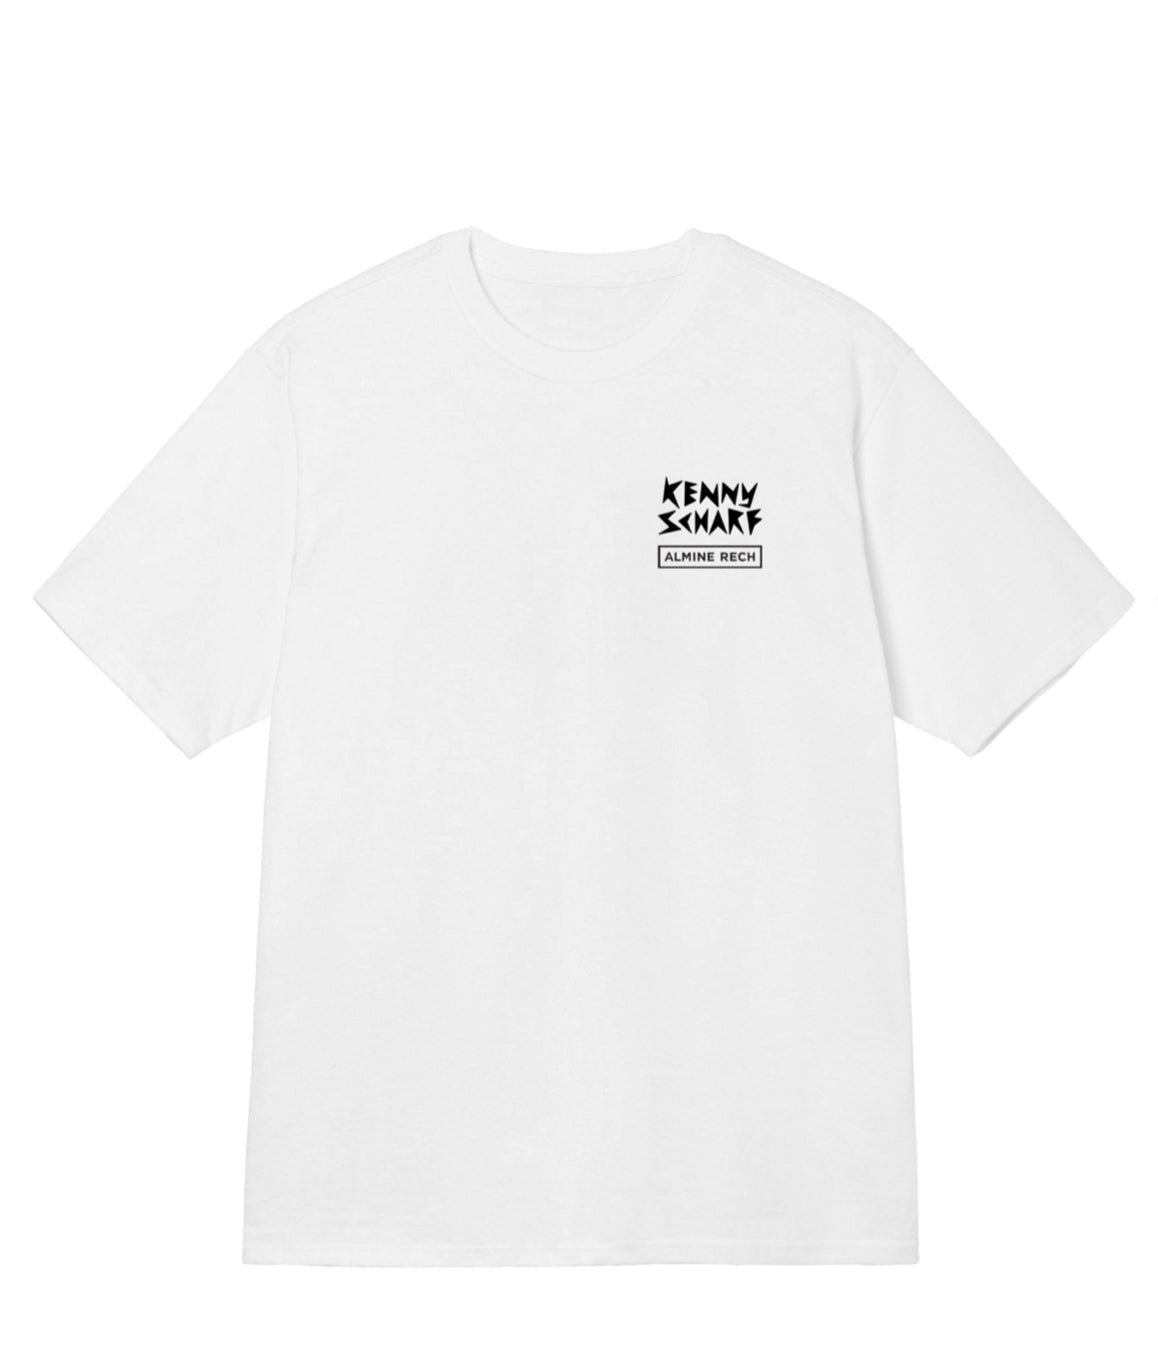 Kenny Scharf x Almine Rech - T-shirt